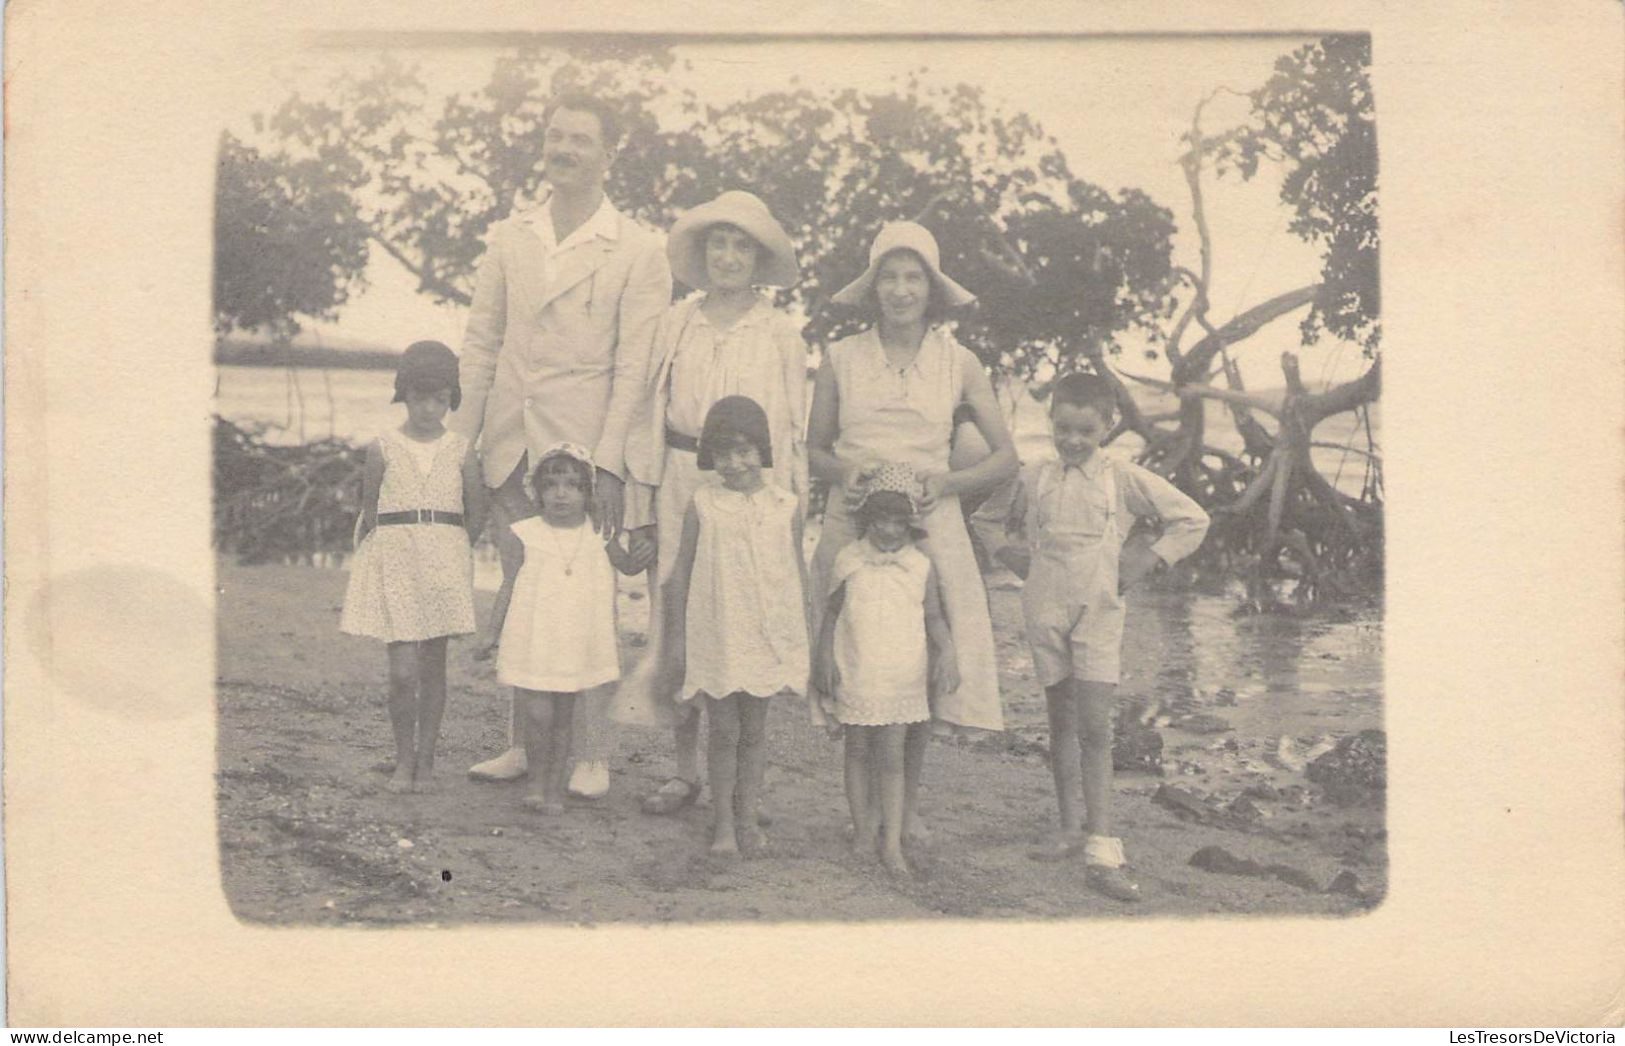 Nouvelle Calédonie - Voh - Carte Photo - Famille - 5 Enfants - Carte Postale Ancienne - New Caledonia